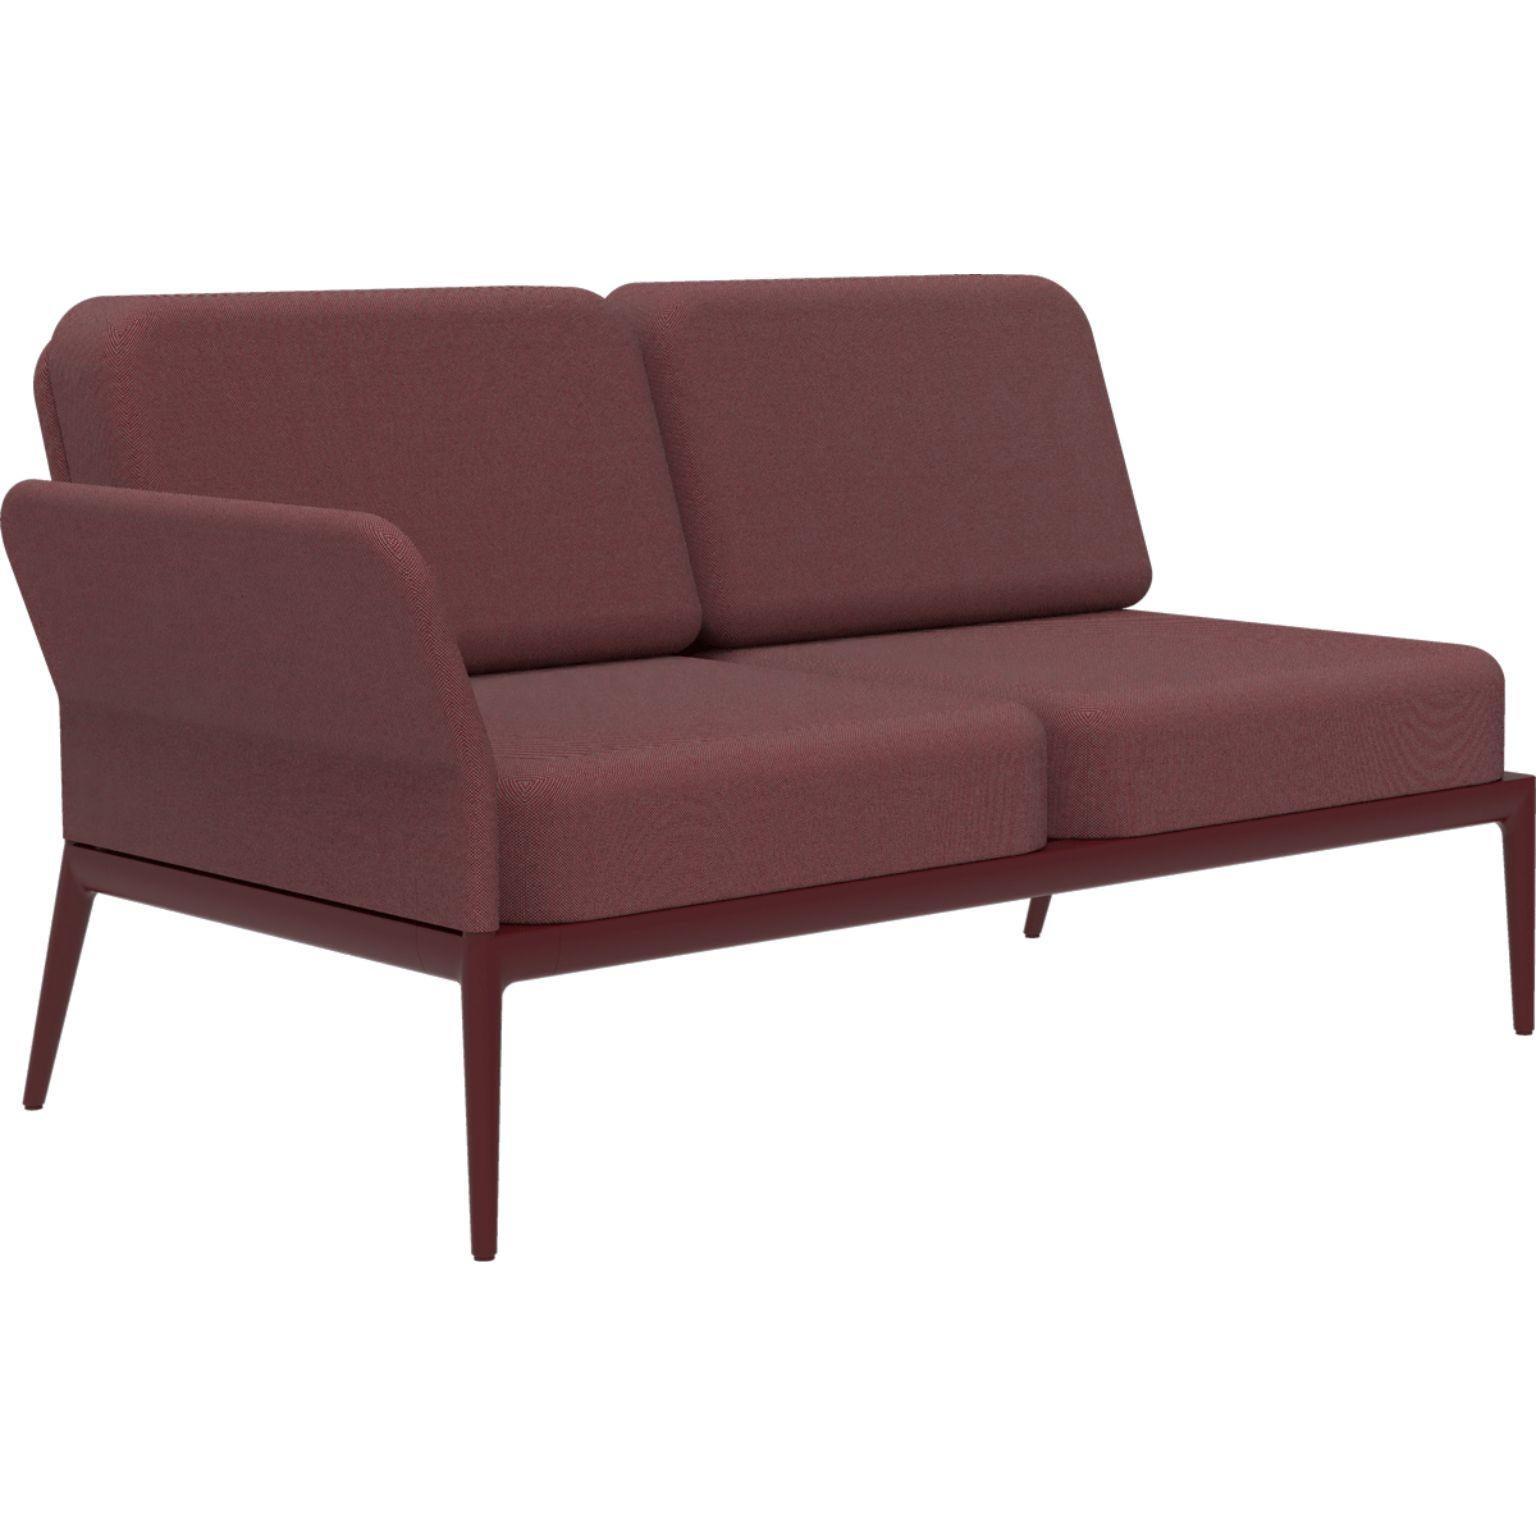 Bezug Burgund Double Right Modular Sofa von MOWEE
Abmessungen: T83 x B148 x H81 cm (Sitzhöhe 42 cm).
MATERIAL: Aluminium und Polstermaterial.
Gewicht: 29 kg.
Auch in verschiedenen Farben und Ausführungen erhältlich. 

Eine Collection'S, die durch